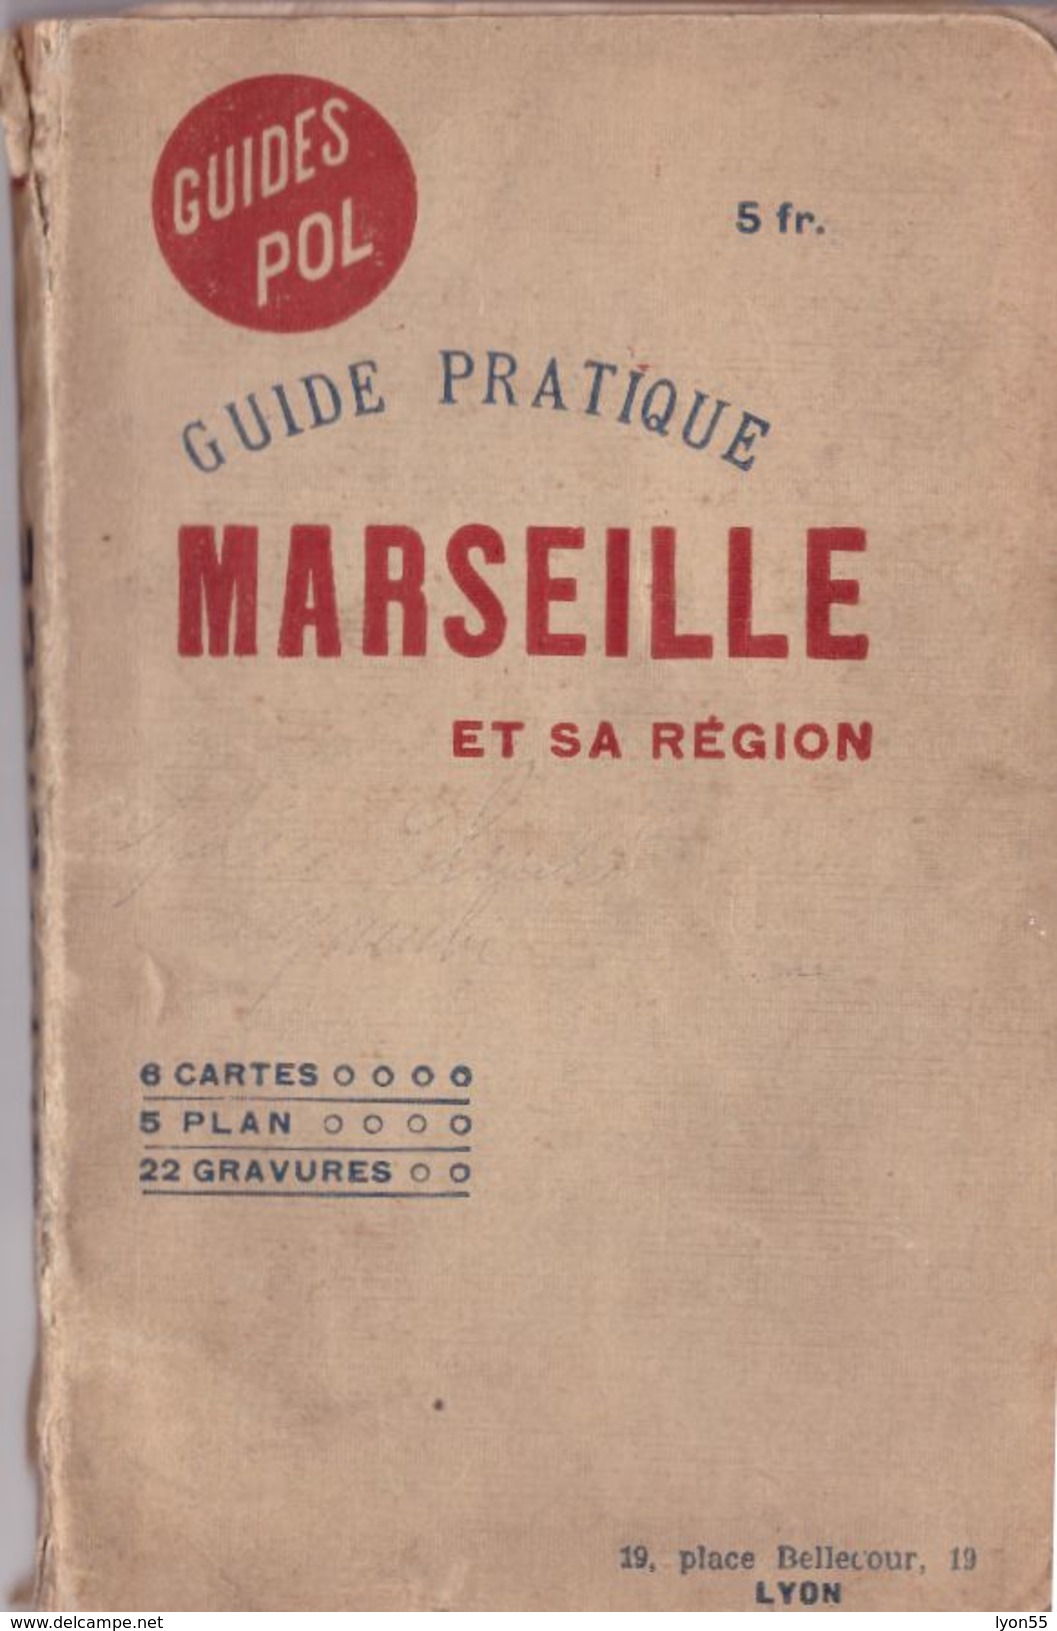 Marseille Et Sa Région Guide Pratique 6 Cartes 5 Plans 22 Gravures éditeur Guides Pol Lyon 9eme édition 5 Fr - Tourism Brochures